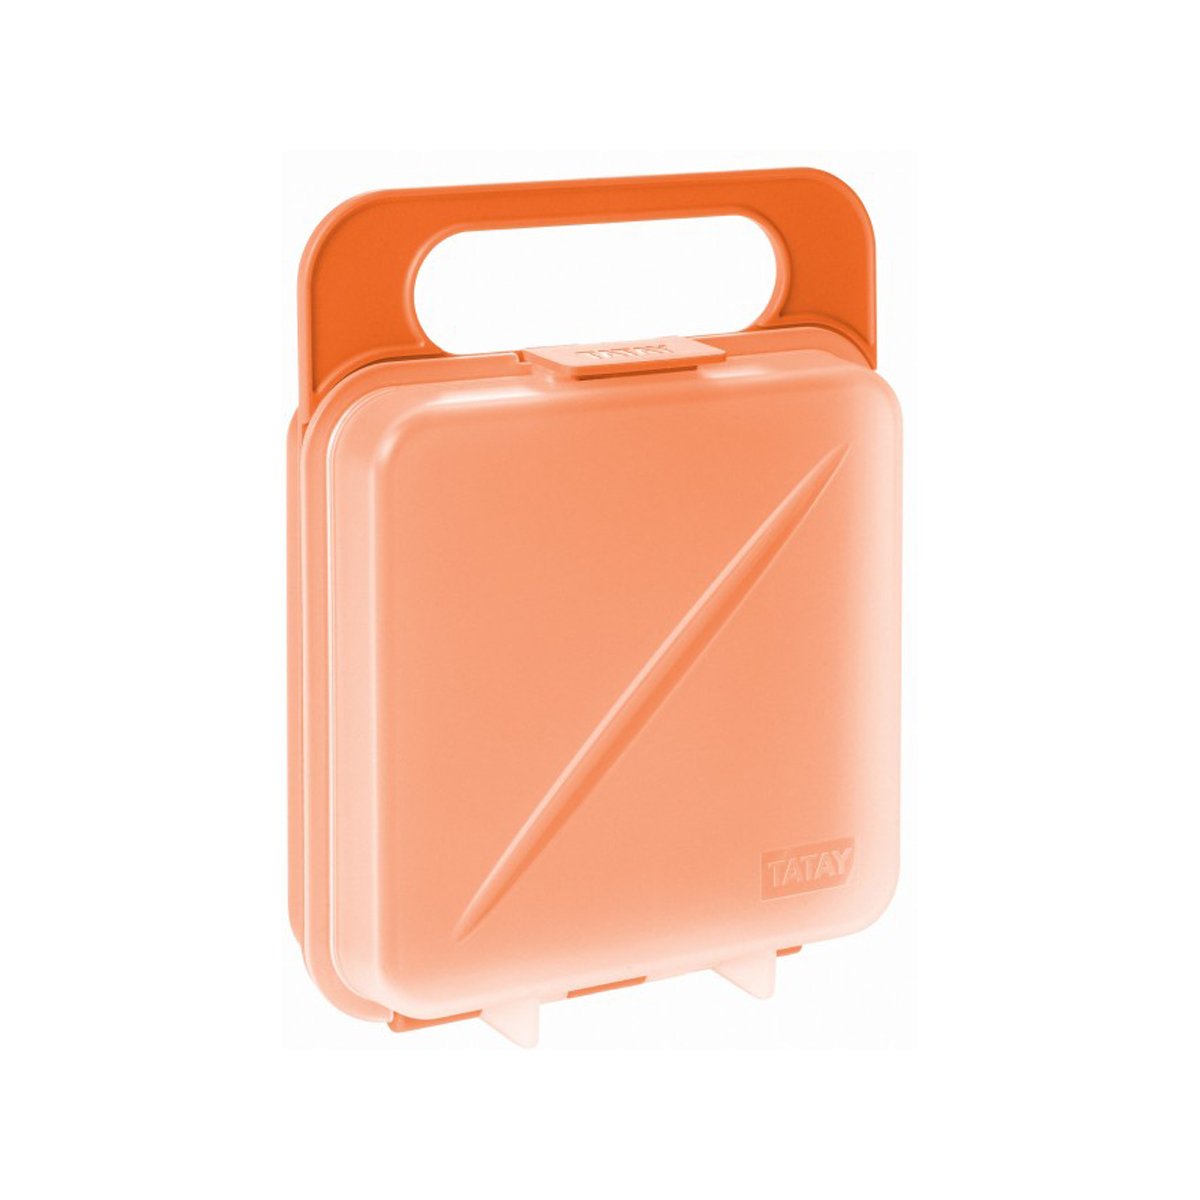 TATAY 1167100 - Porta Sandwich Reutilizable y Ecológico Libre de BPA